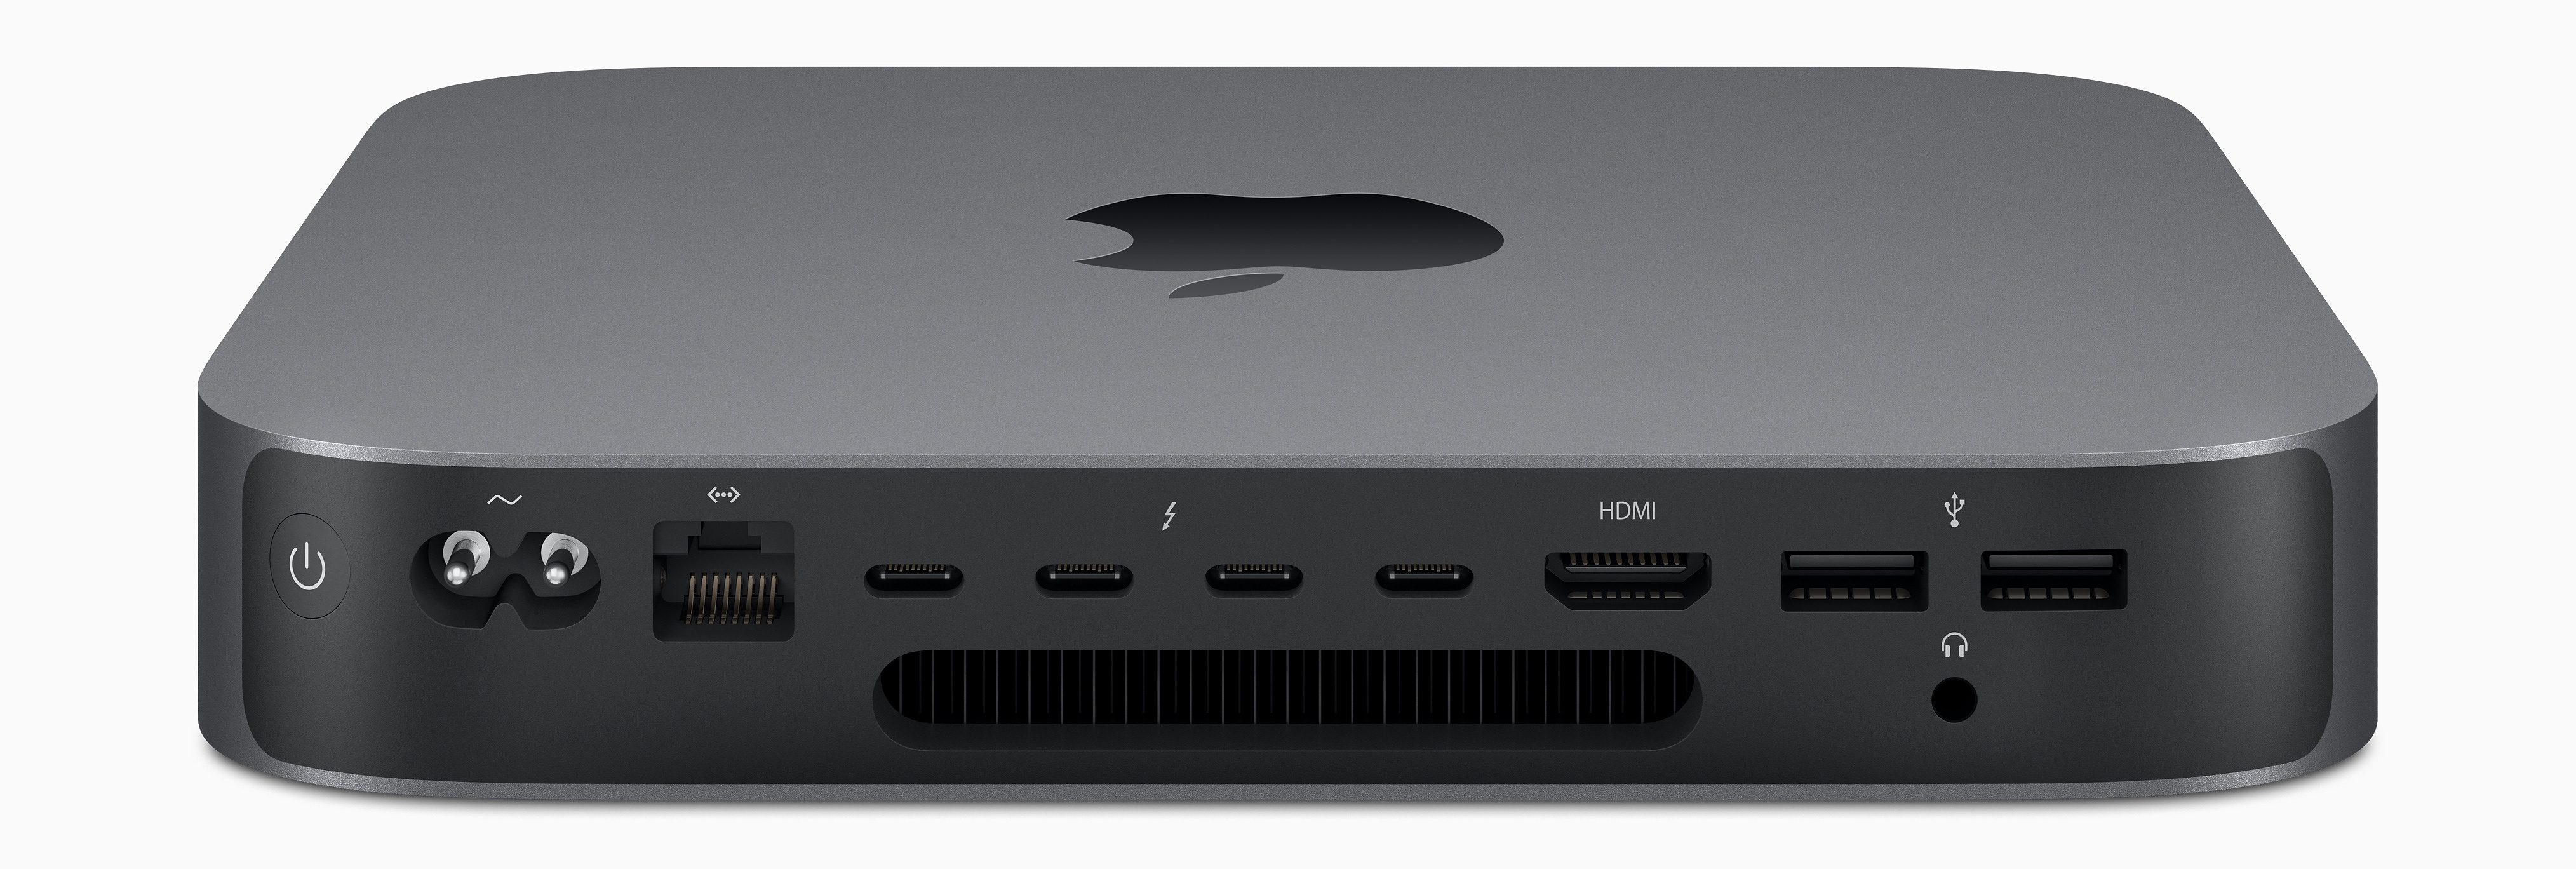 Apple nâng cấp Mac
Mini, gấp đôi dung lượng lưu trữ, giá không đổi